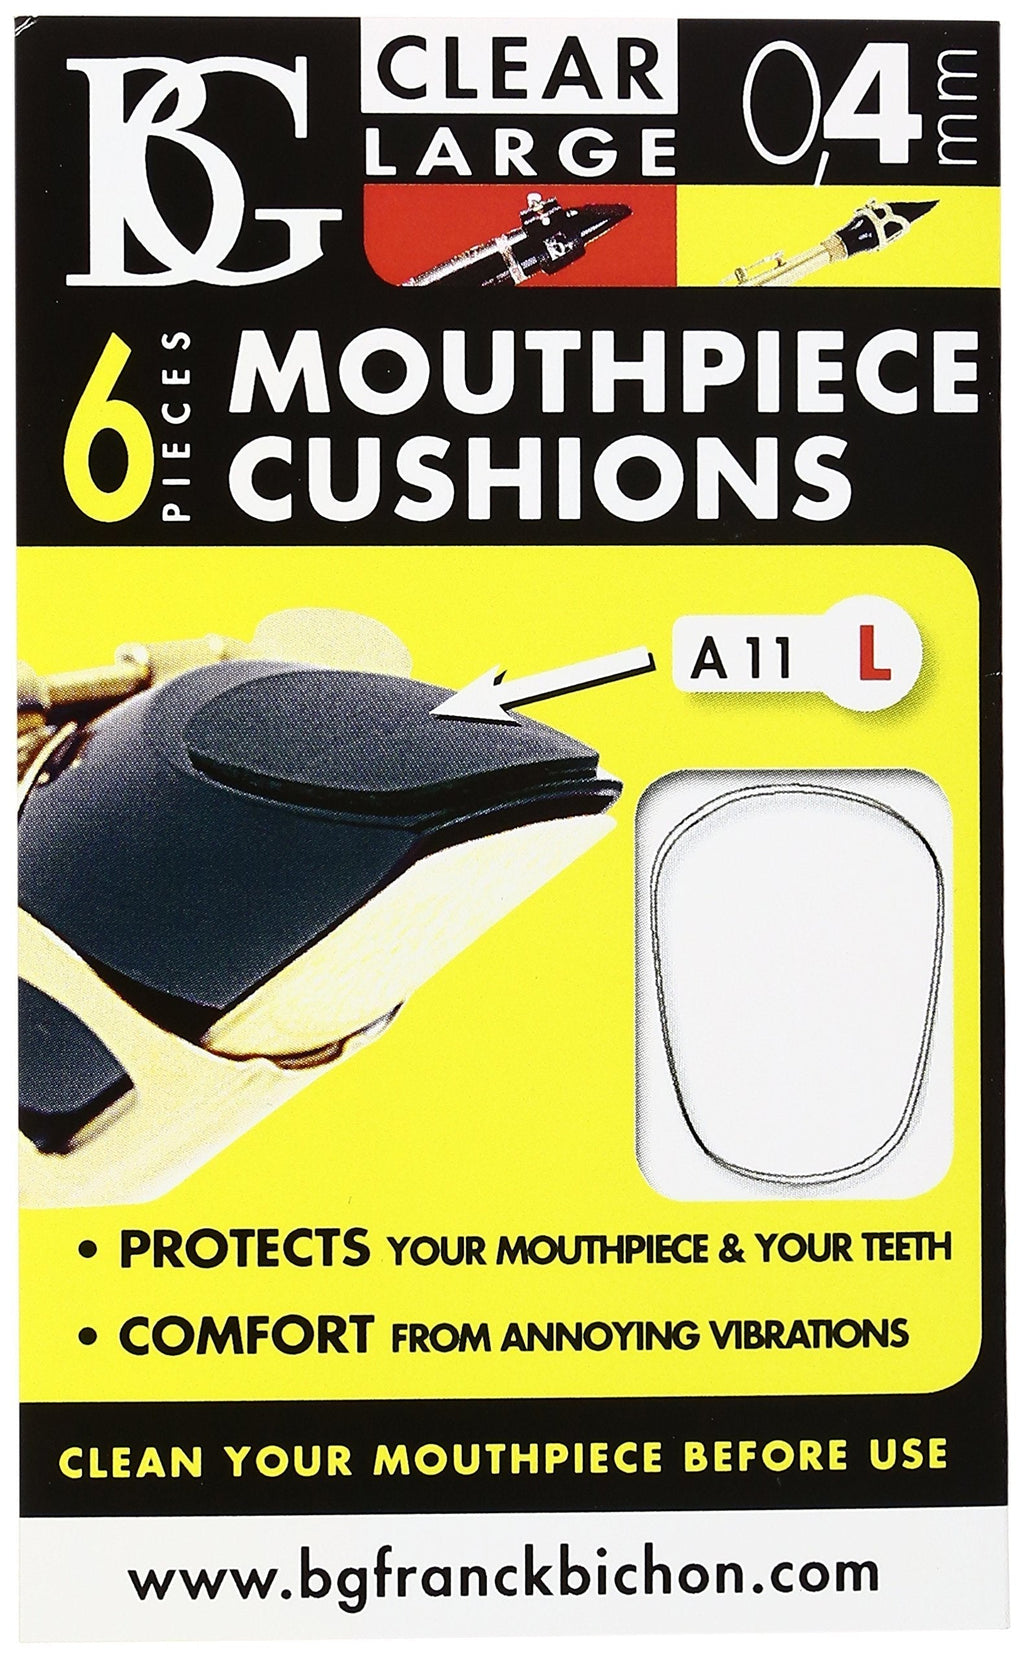 BG A11 L Mouthpiece Patch, Clear, Large 0.4MM, 6 CRT